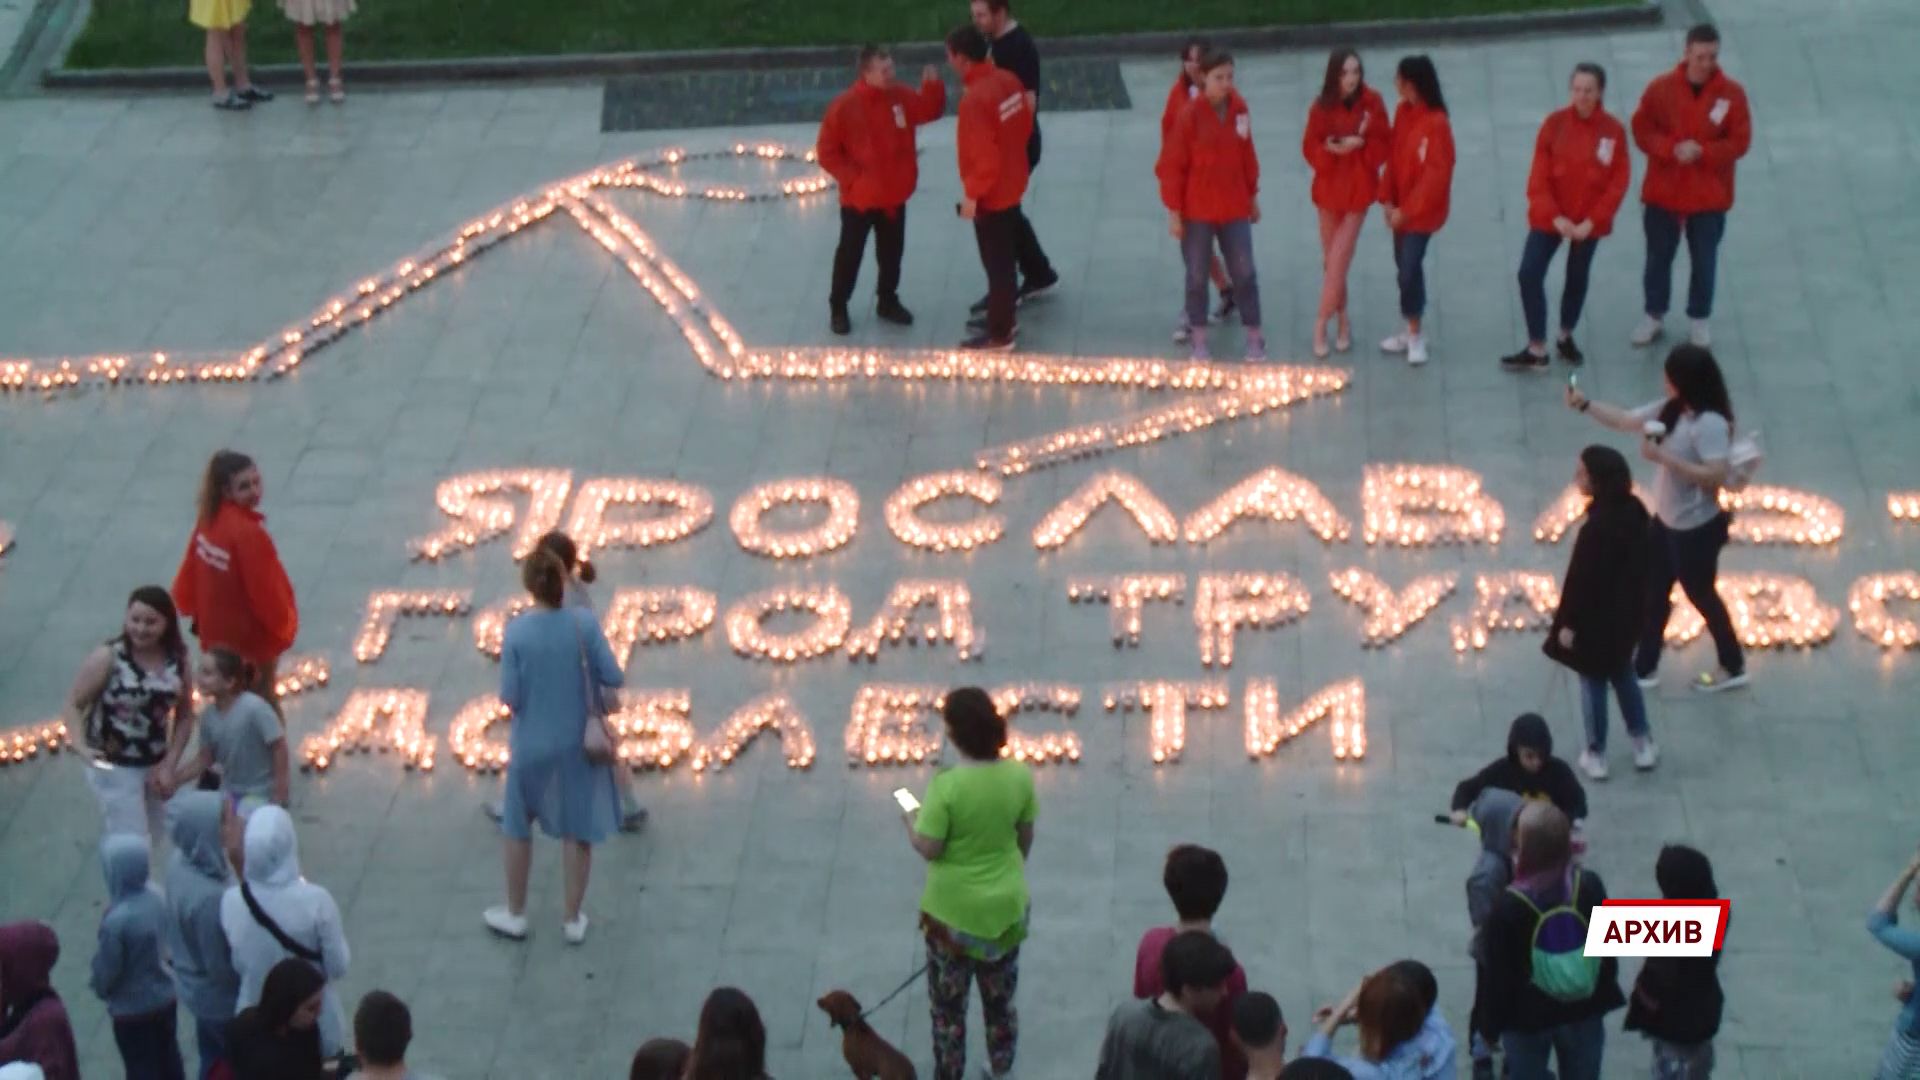 Ярославцы решили установить стелу «Город трудовой доблести» в парке Мира